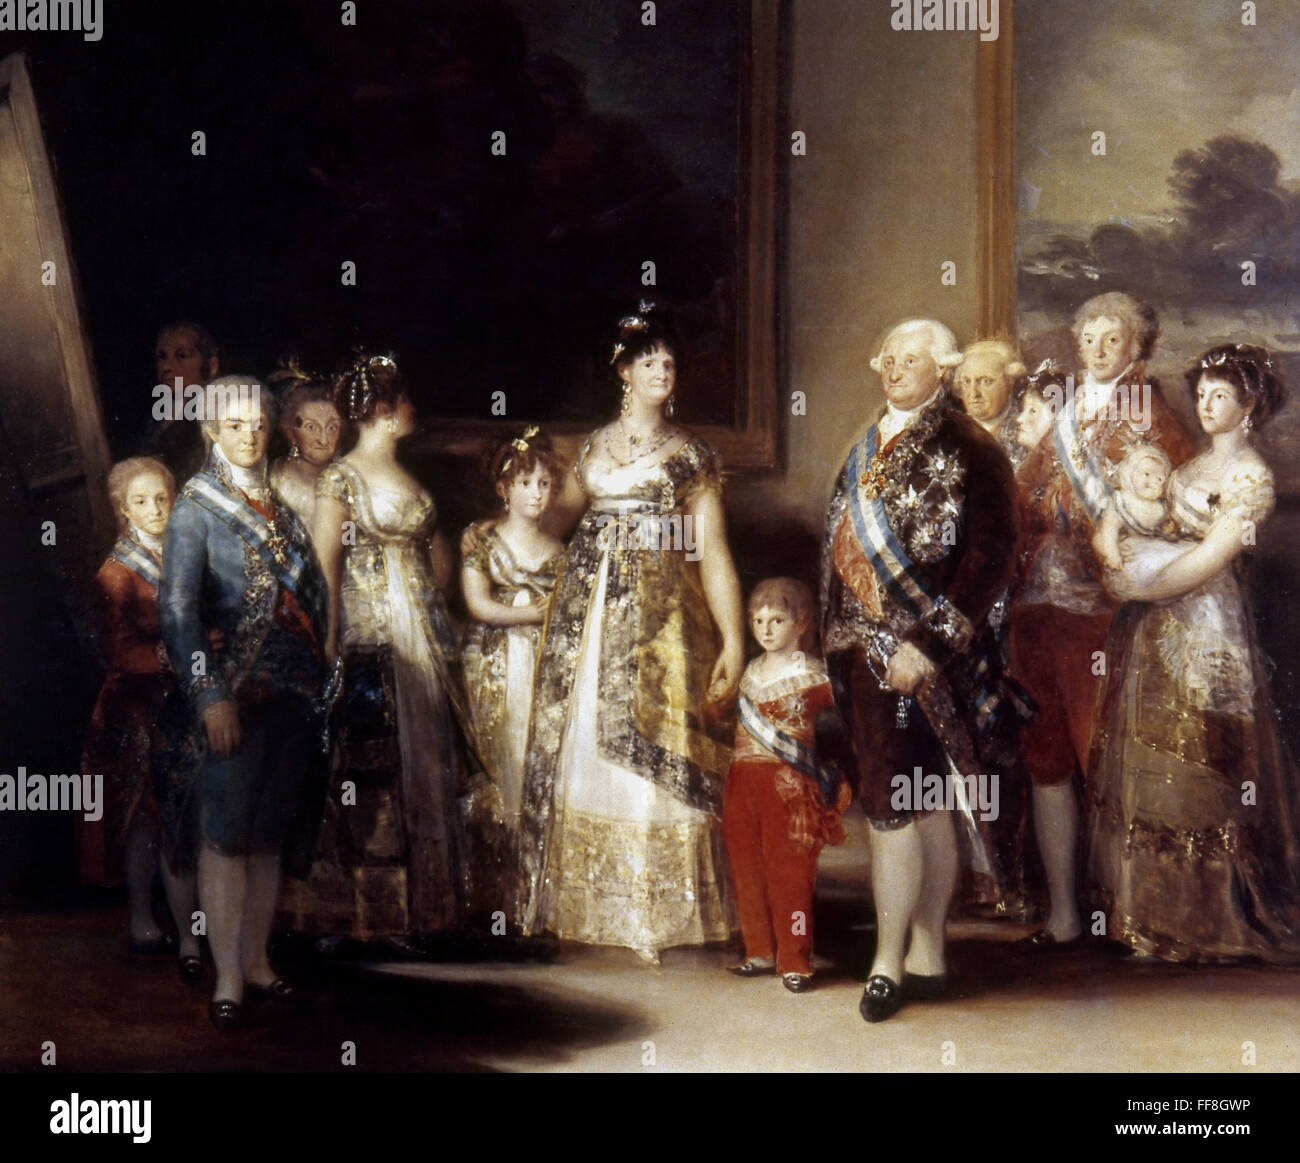 GOYA: Carlos IV, 1800. /Nla familia de Carlos IV, por Francisco de Goya. Óleo sobre lienzo, 1800. Foto de stock